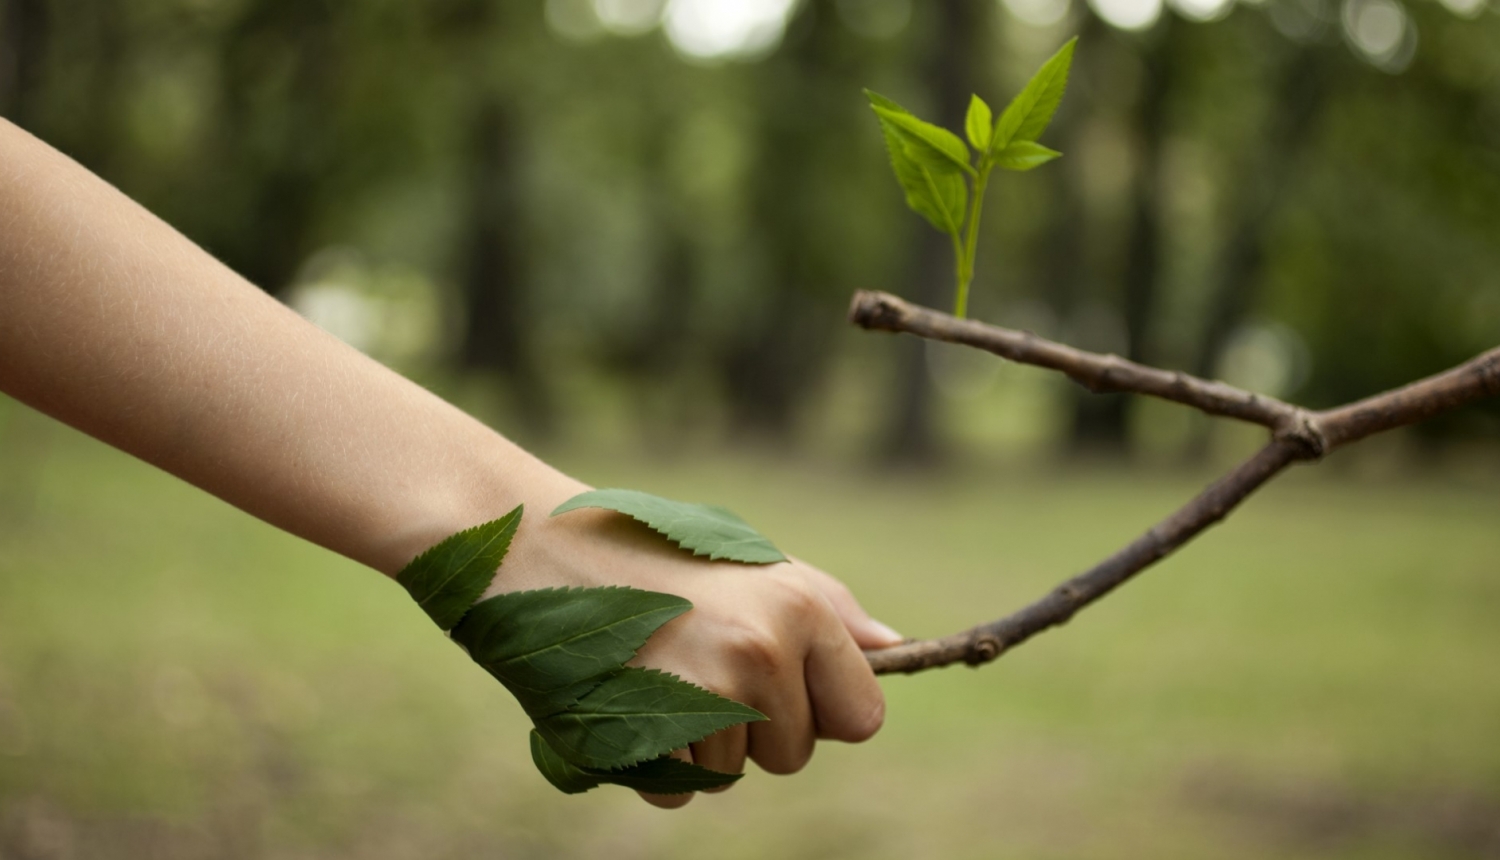 cilvēka roka sarokojas ar koka zaru ar zaļu lapiņu